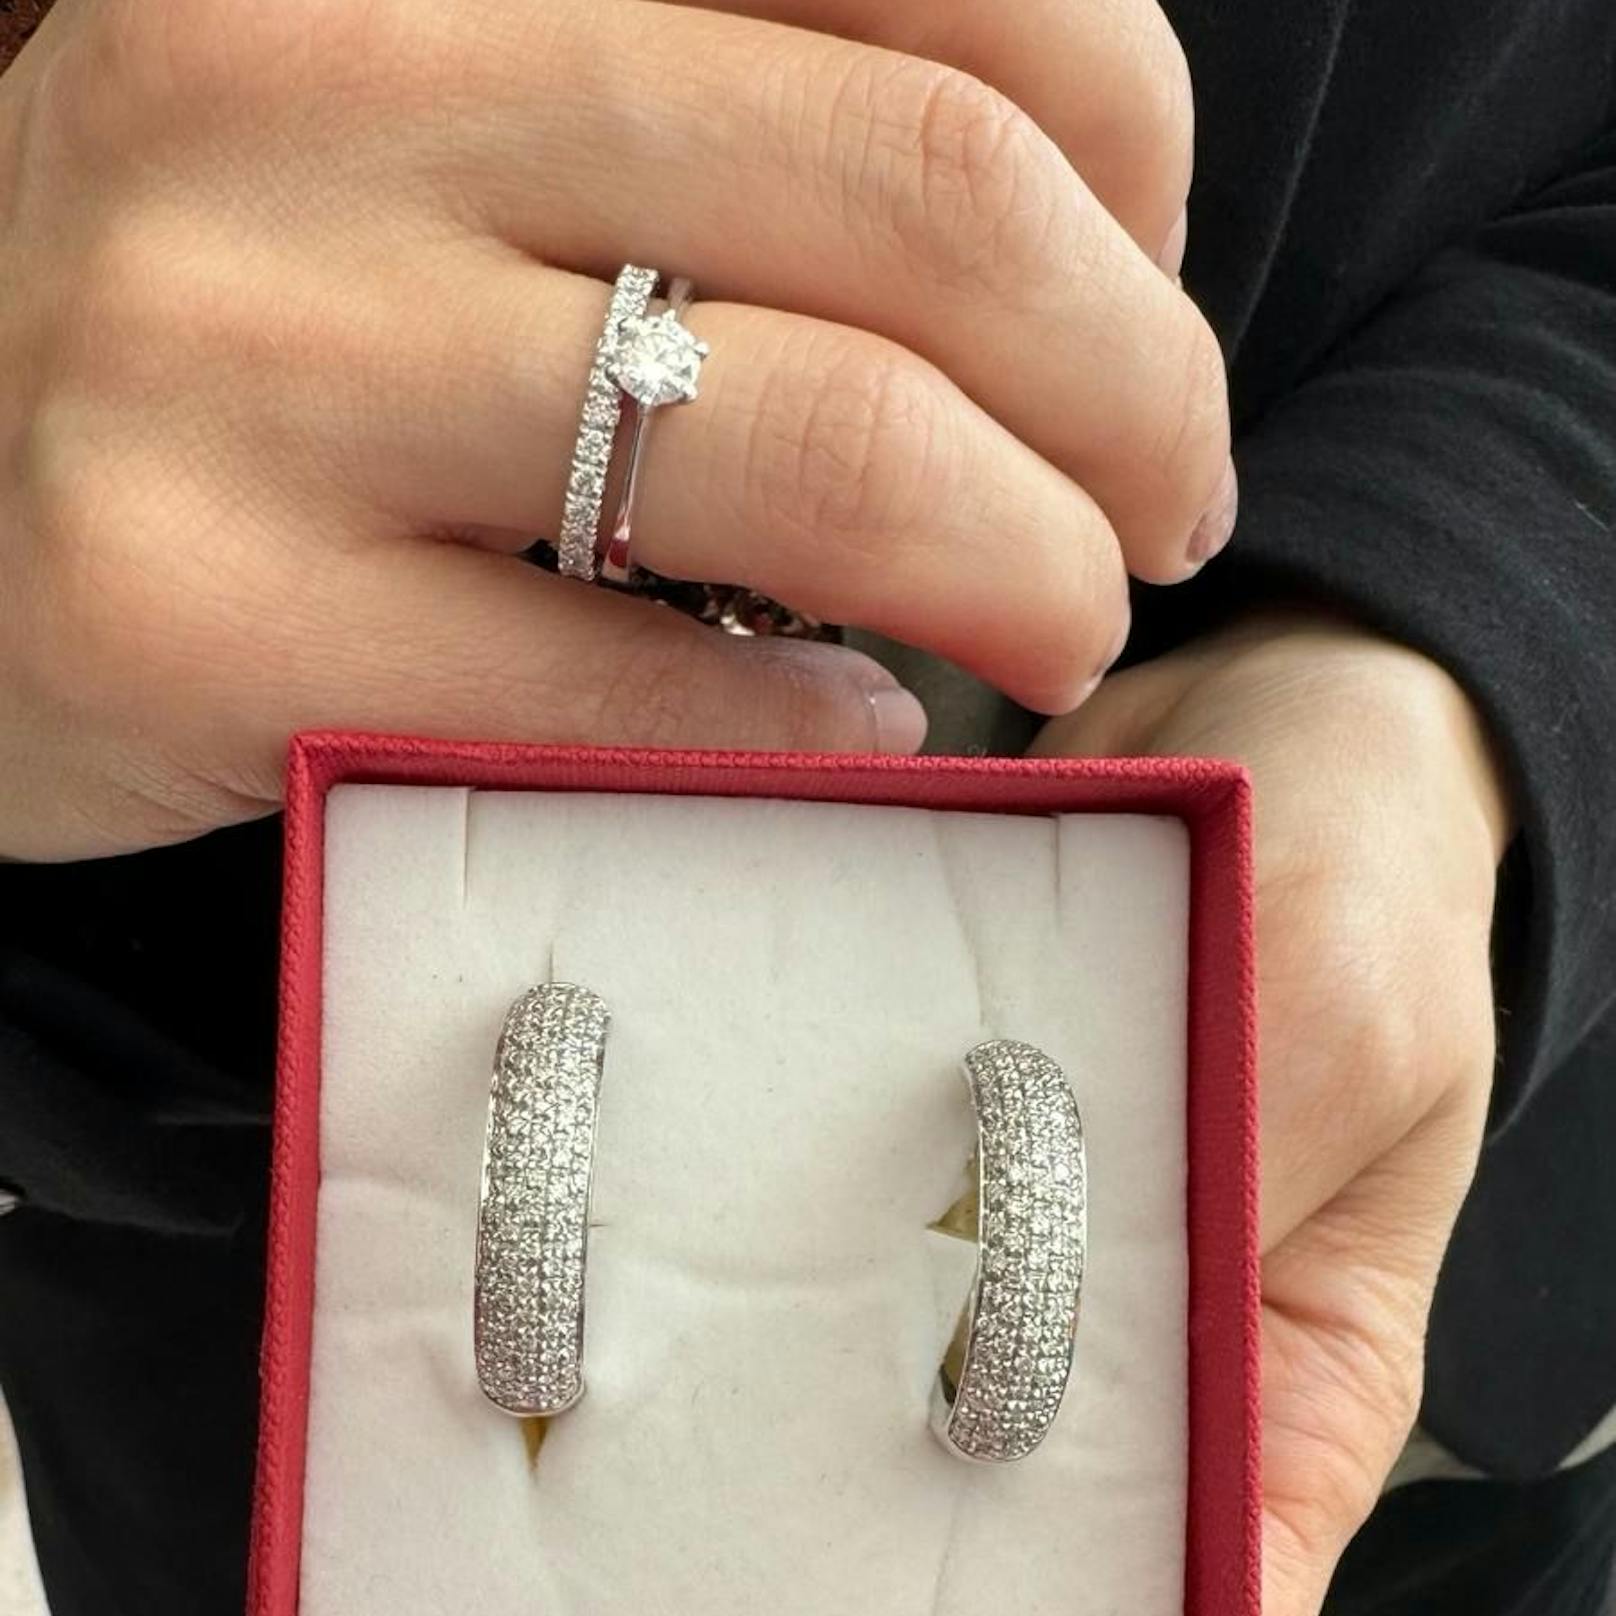 Richard Lugners Morgengabe für seine Simone: Passende Ohrringe zu ihrem Ehering